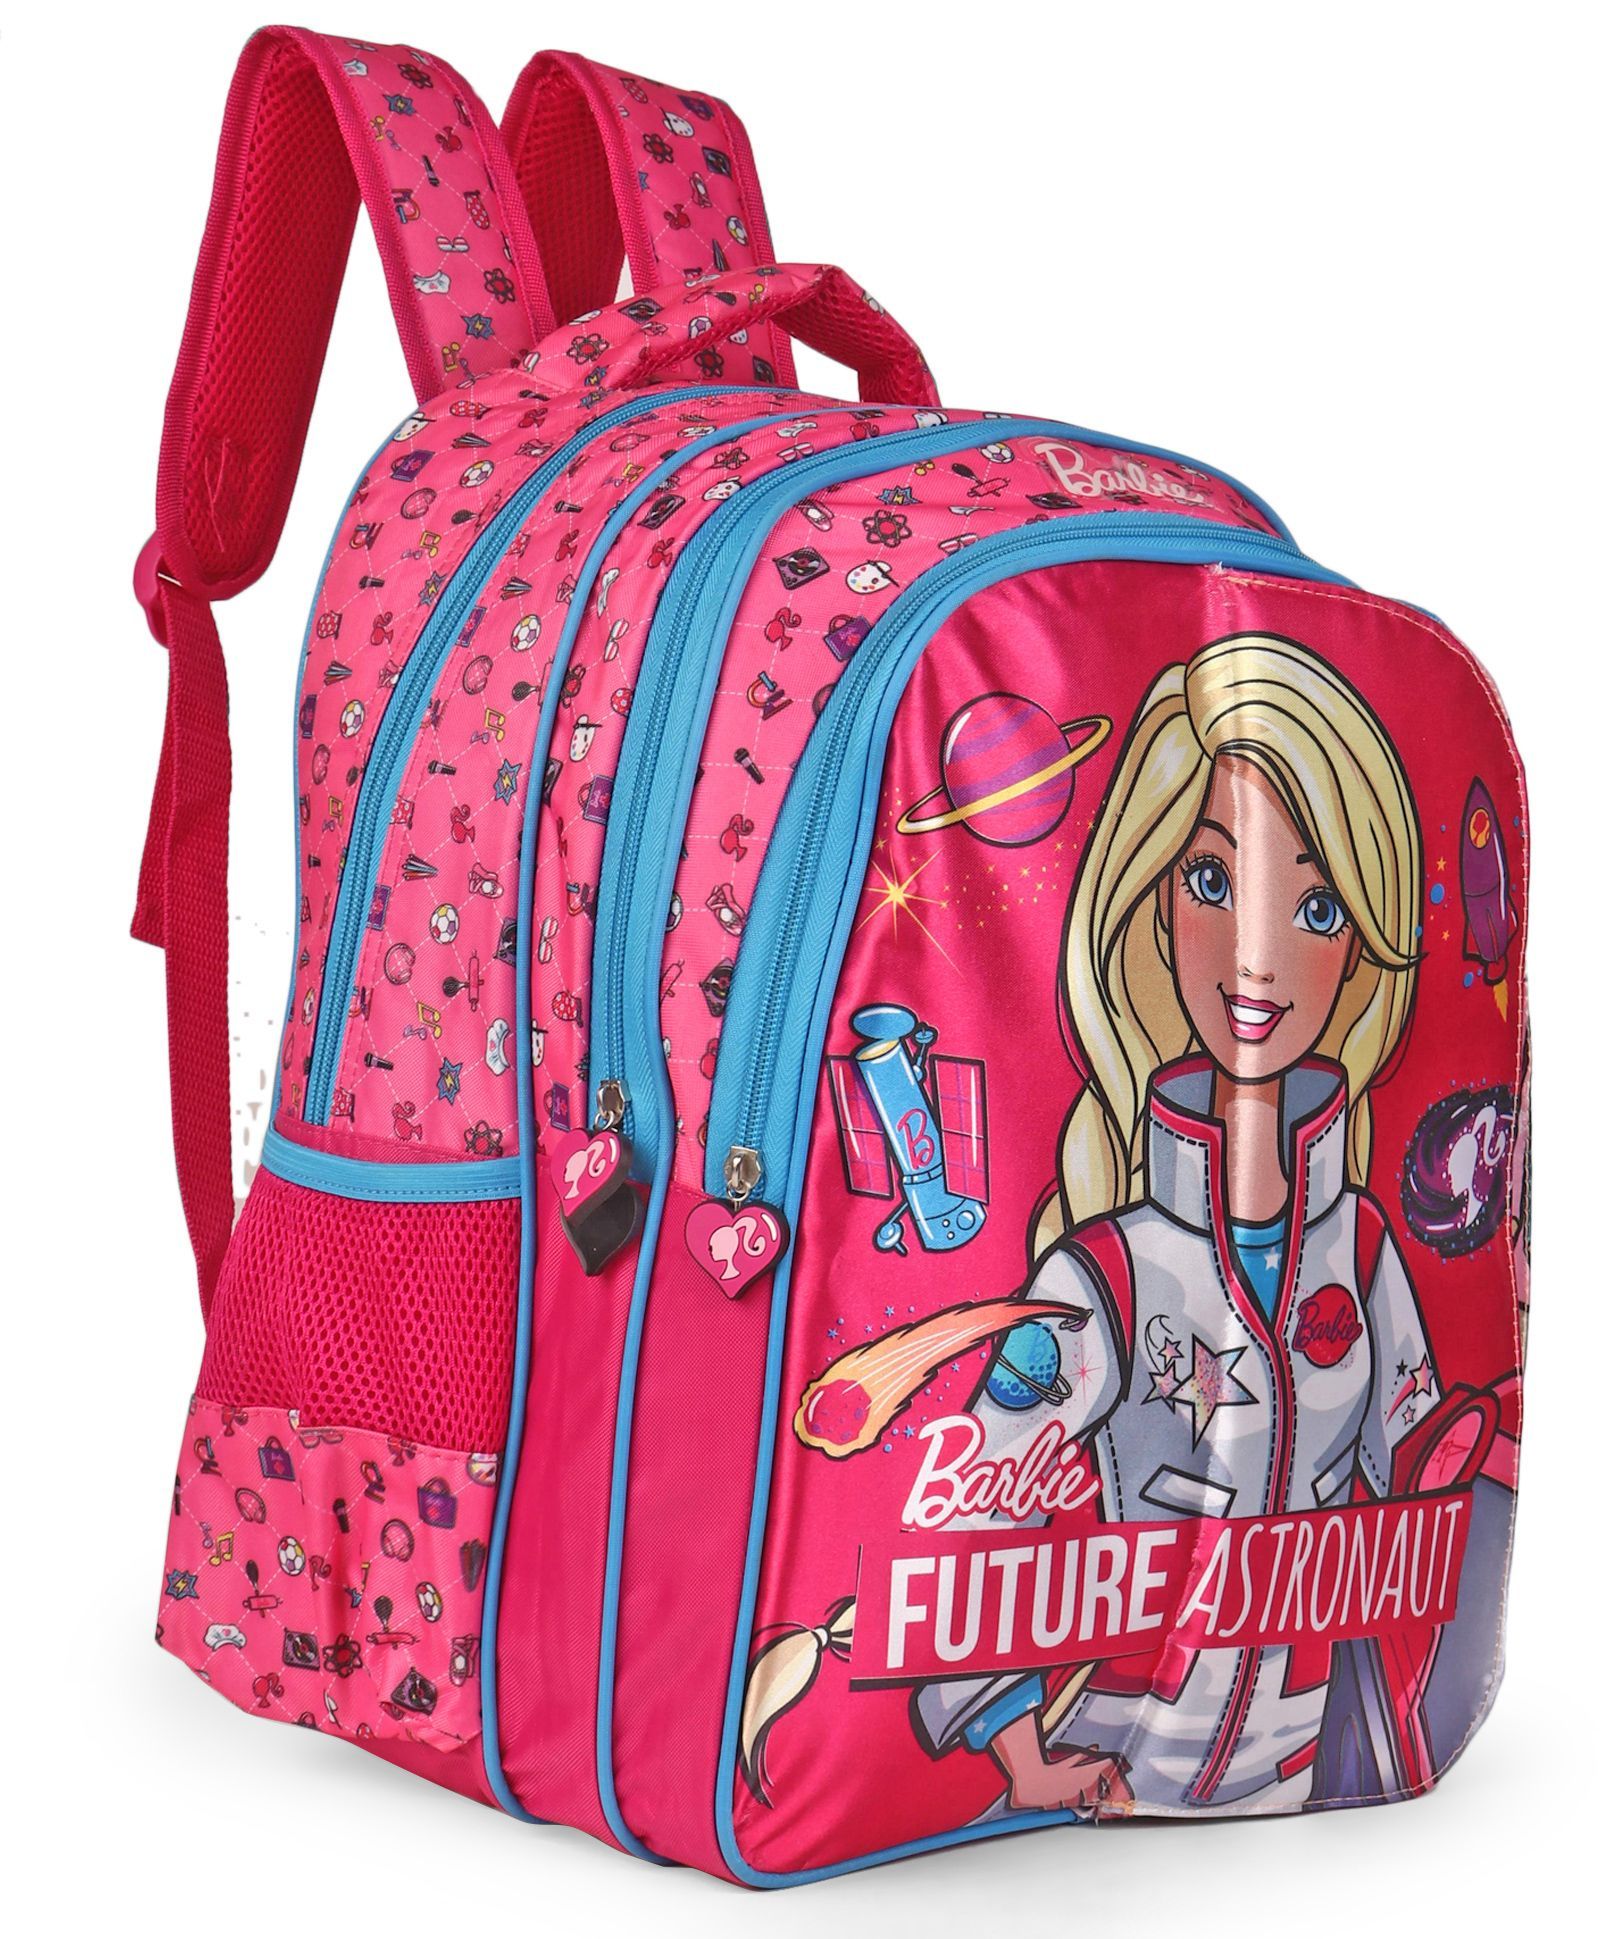 barbie school bag